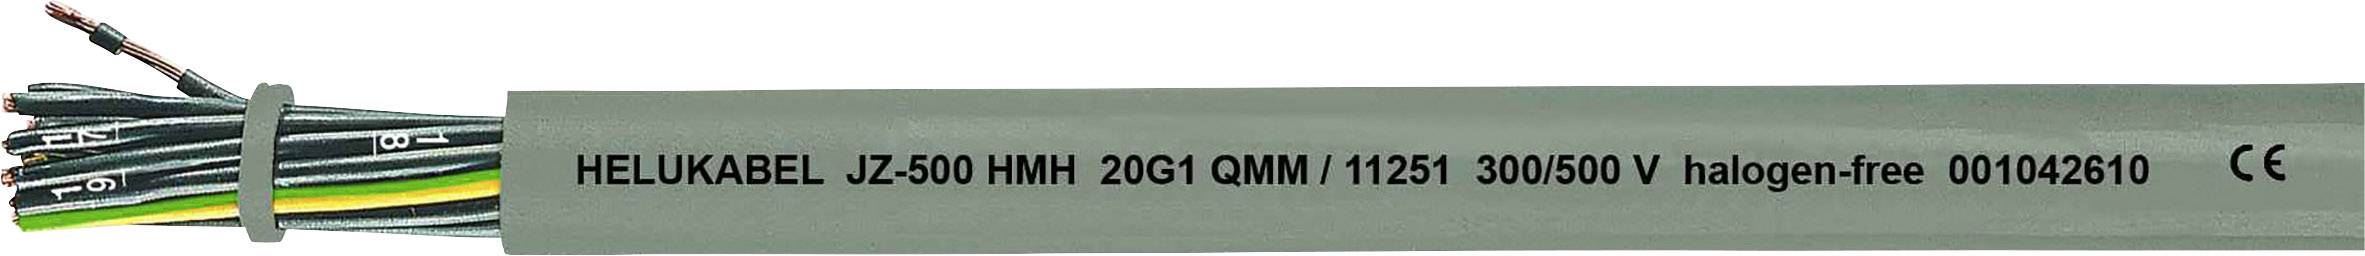 HELUKABEL JZ-500 HMH Steuerleitung 3 G 2.50 mm² Grau 11278-1000 1000 m